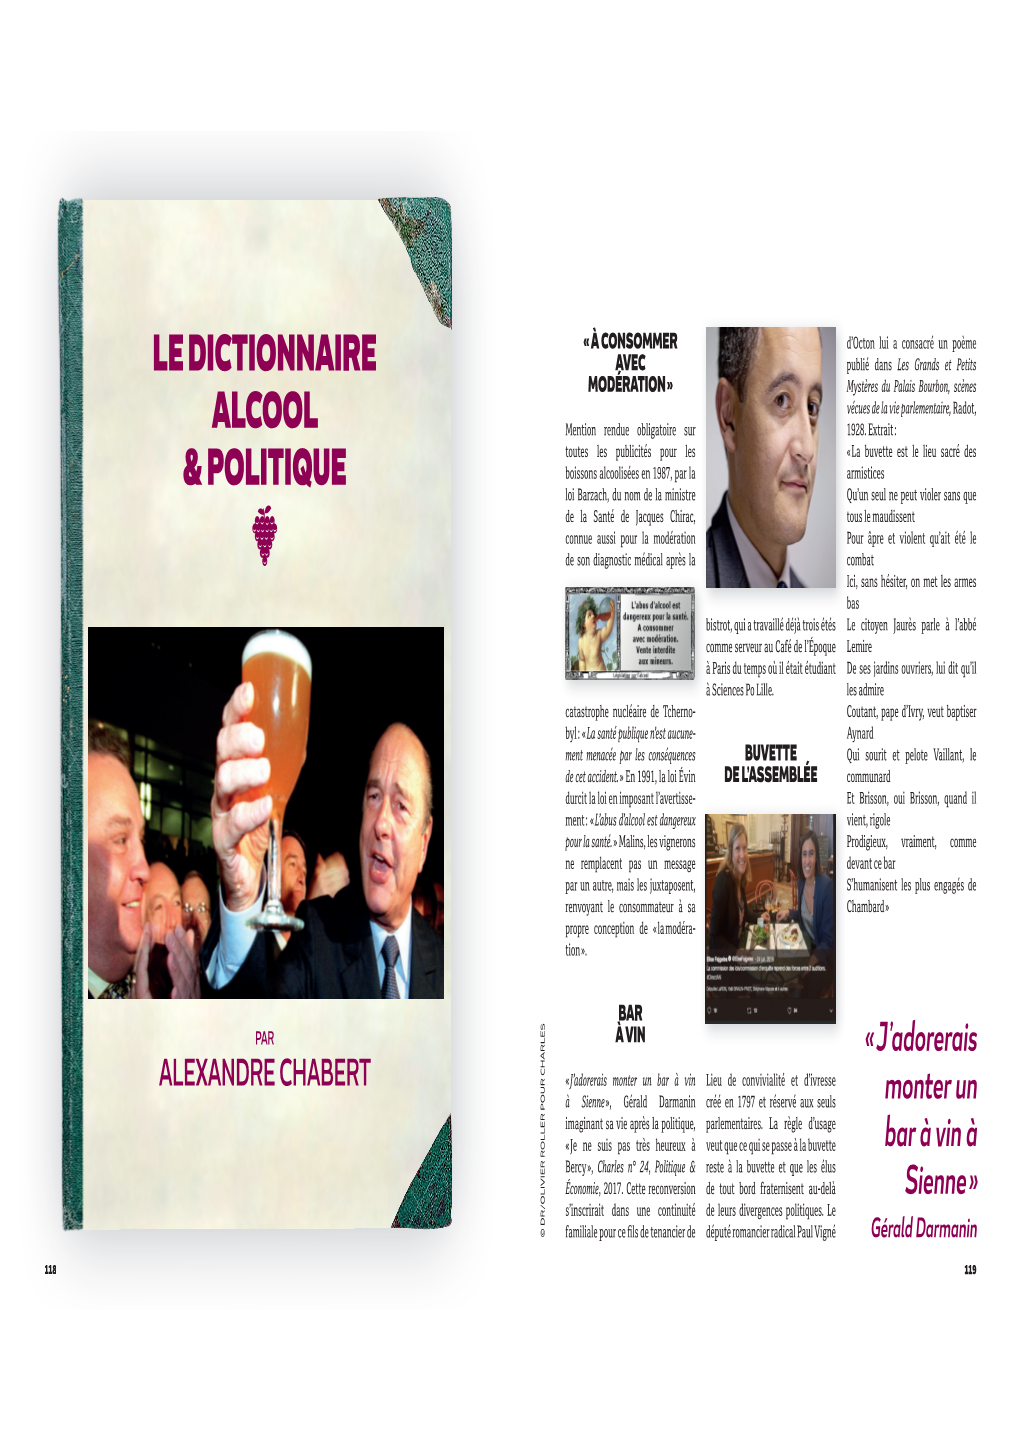 Le Dictionnaire Alcool & Politique